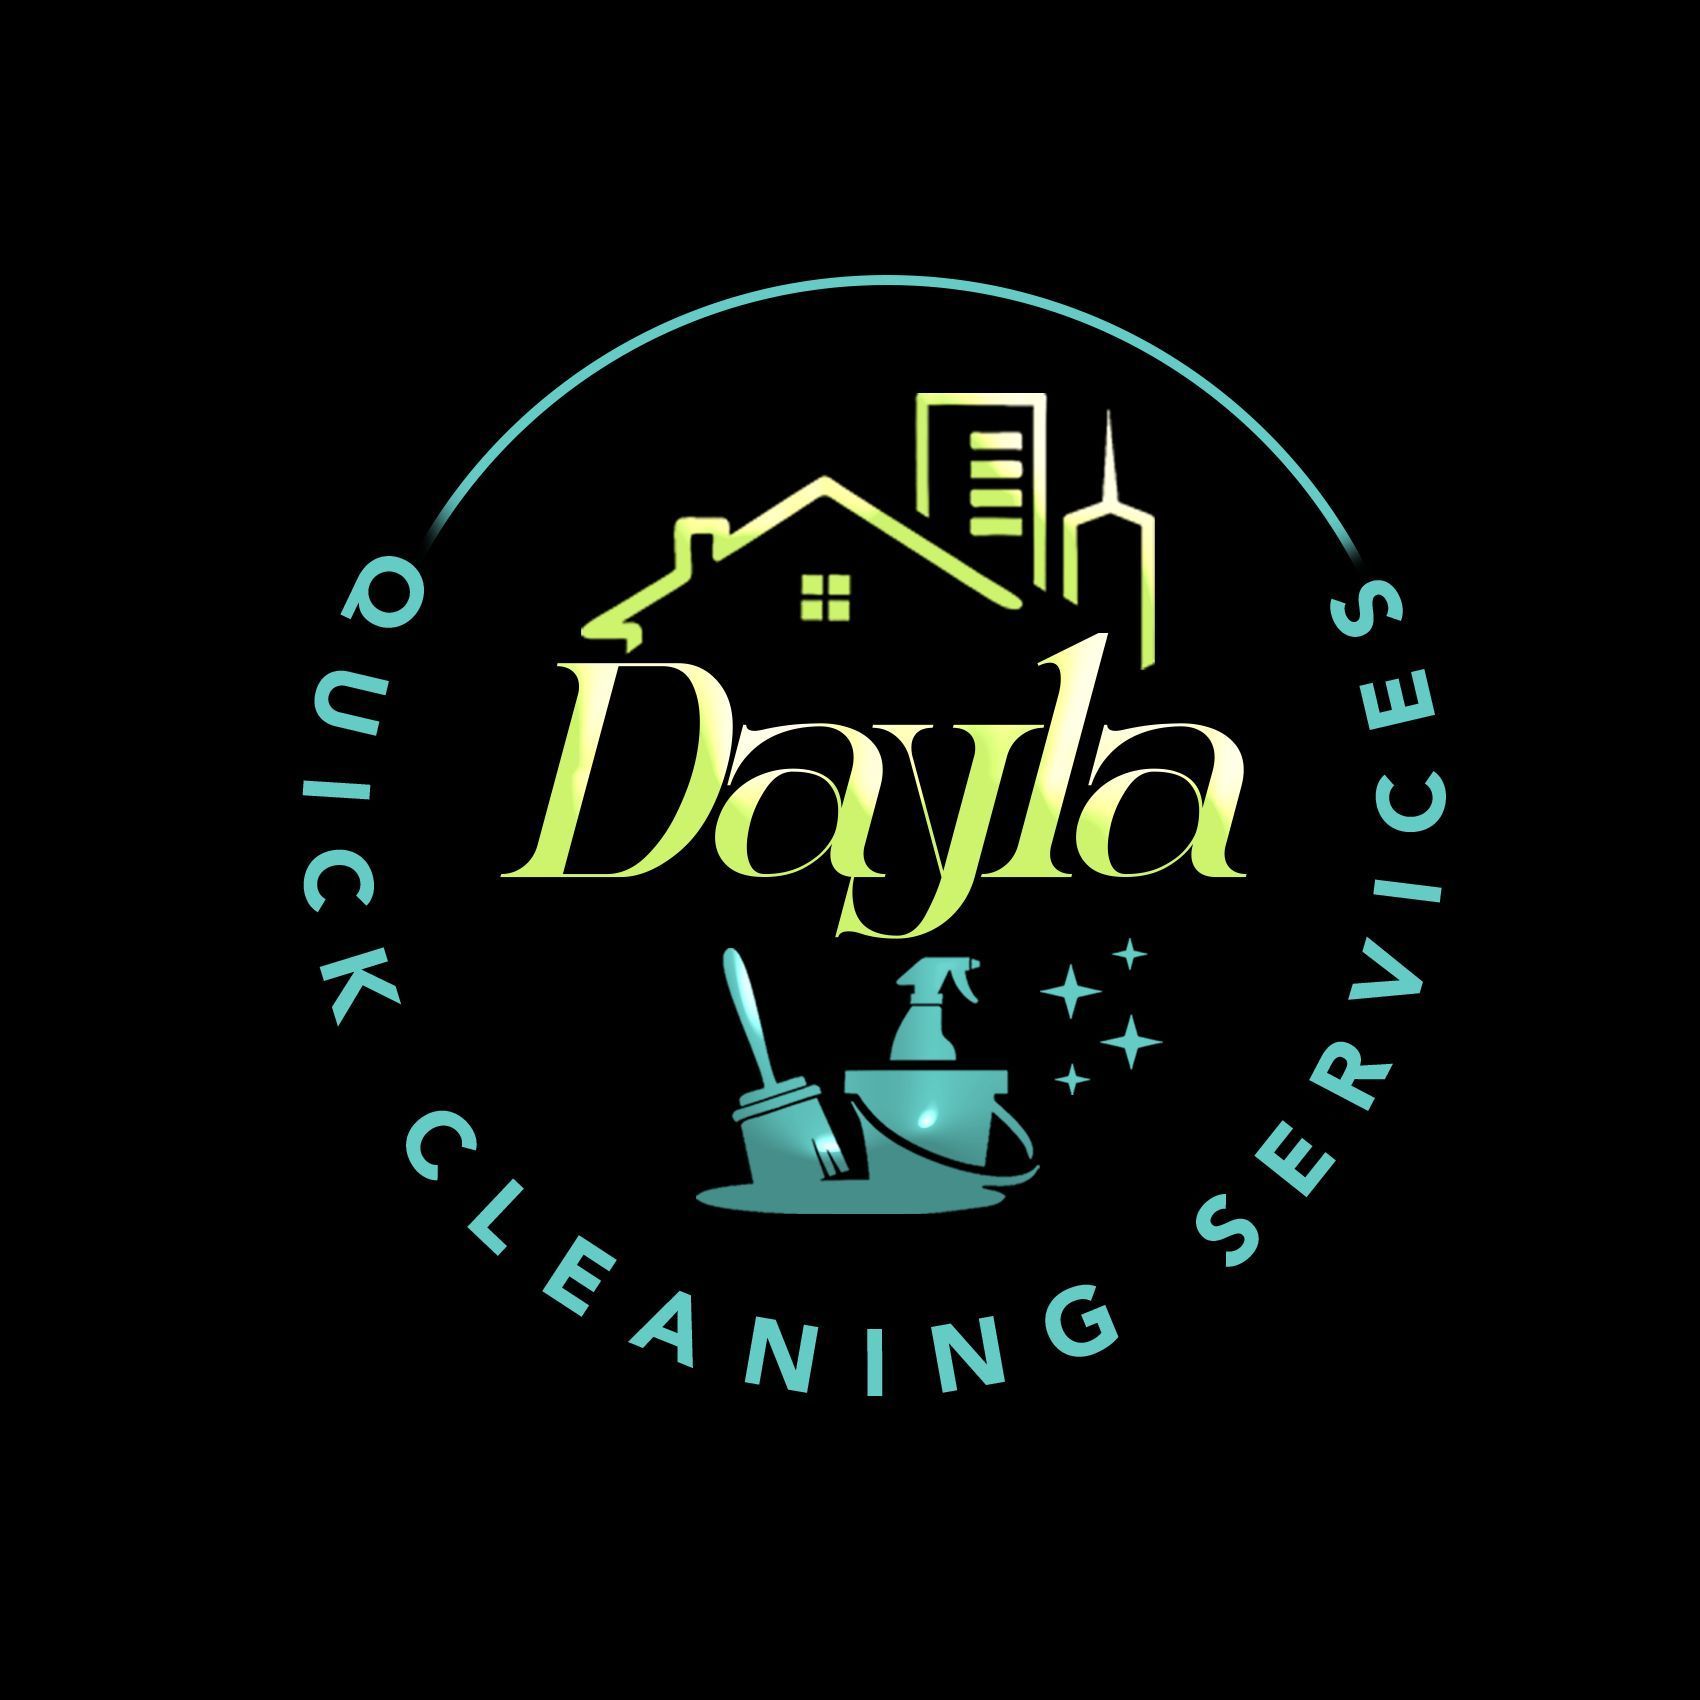 Dayla Quick Cleaning Services, 129 N Warren St, 2nd floor, West Hazleton, 18202